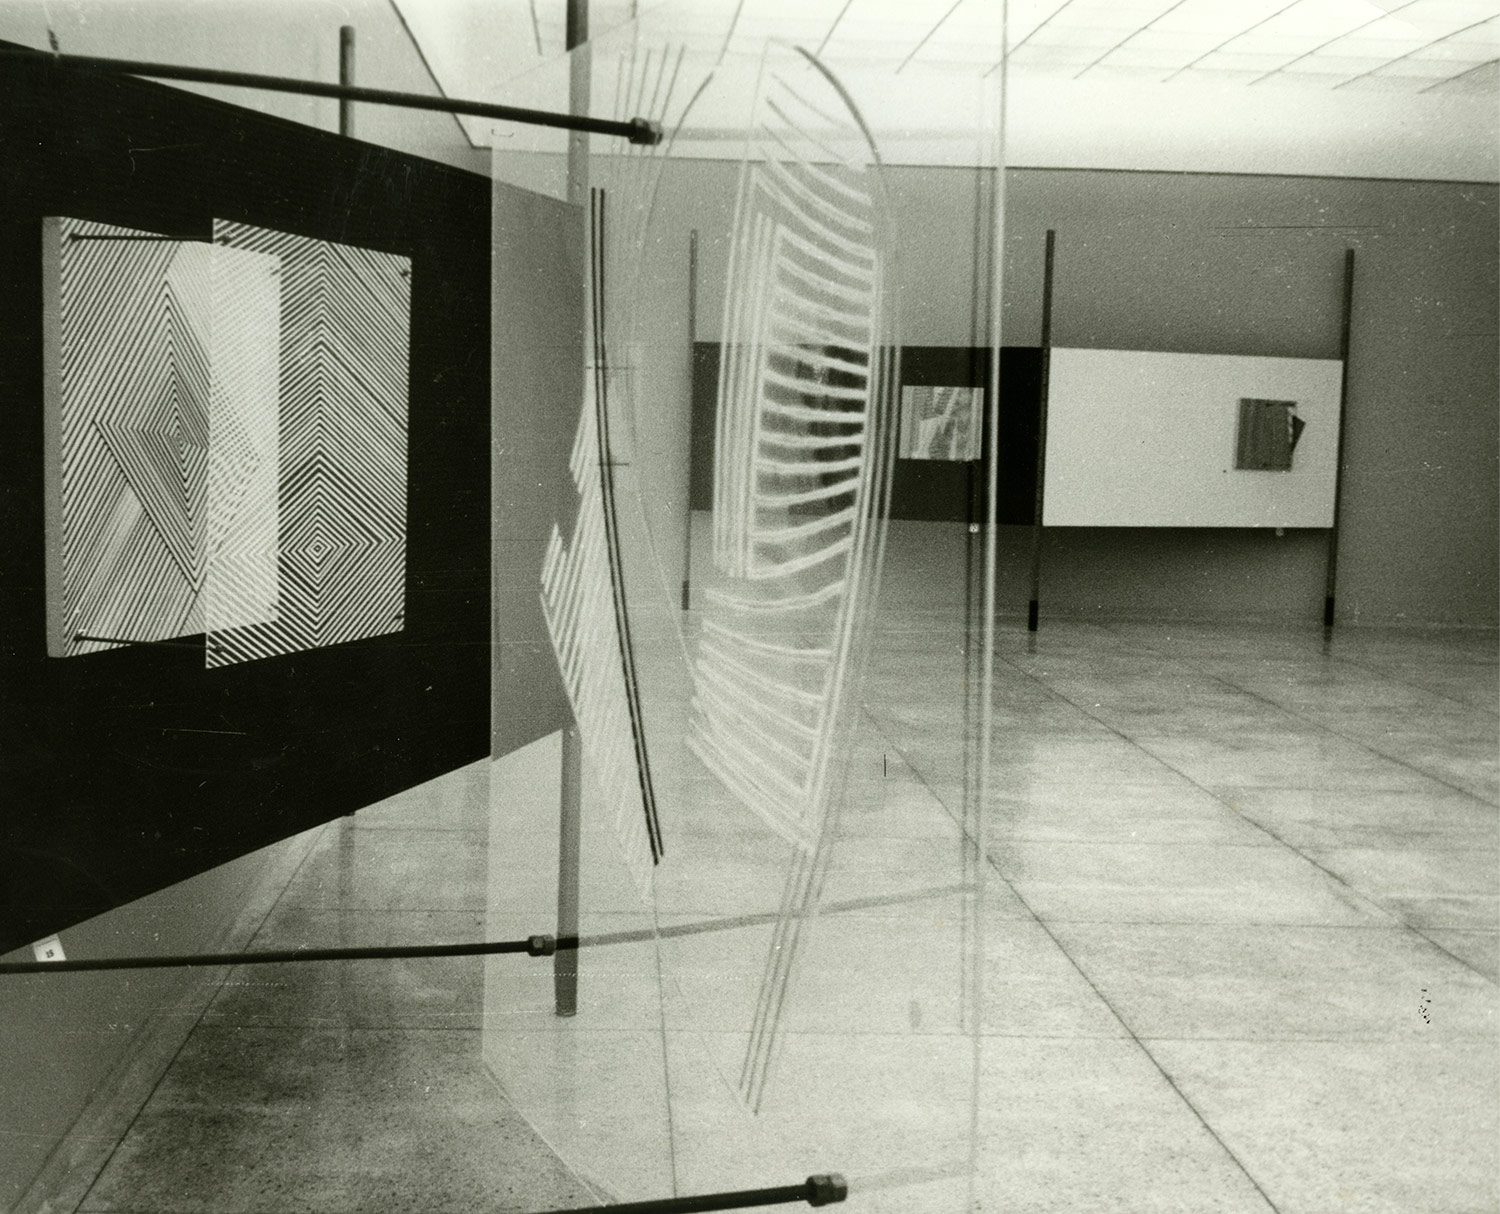 Soto estructuras cinéticas exhibition at theMuseo de Bellas Artes de Caracas Venezuela in 1957